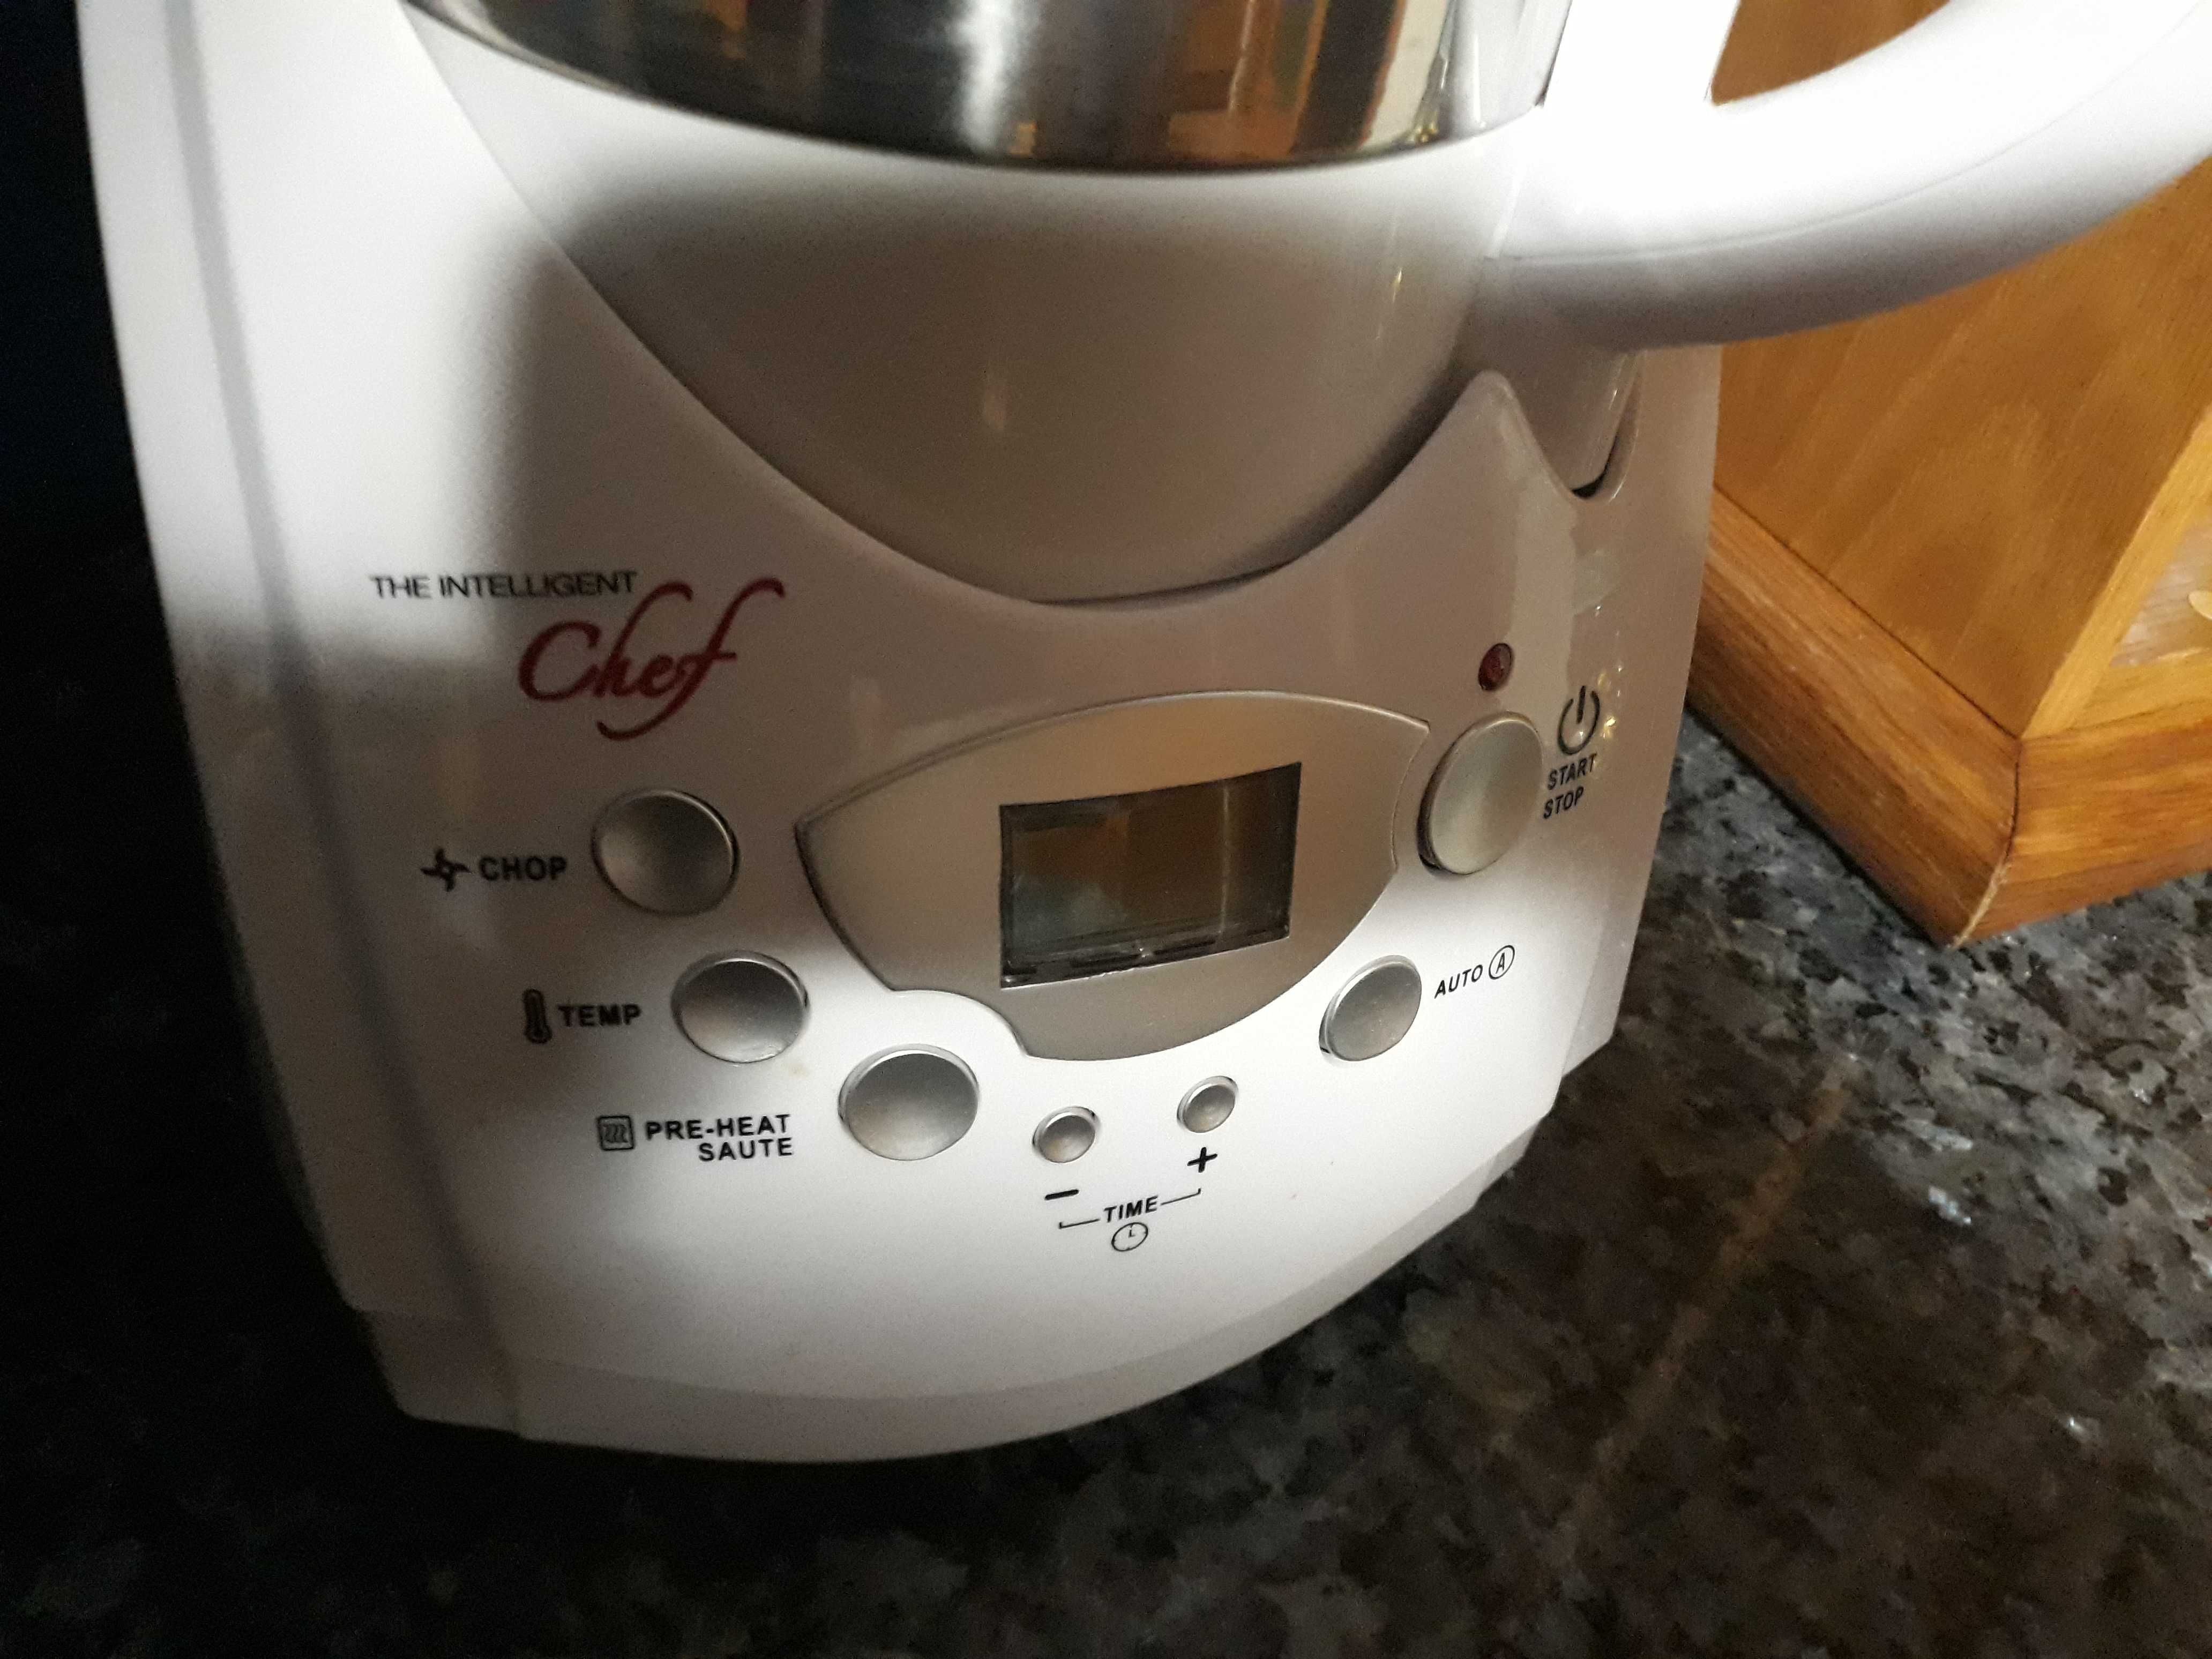 Robô de cozinha novo the intelligent chef Mod KA 6506 Soup Marker